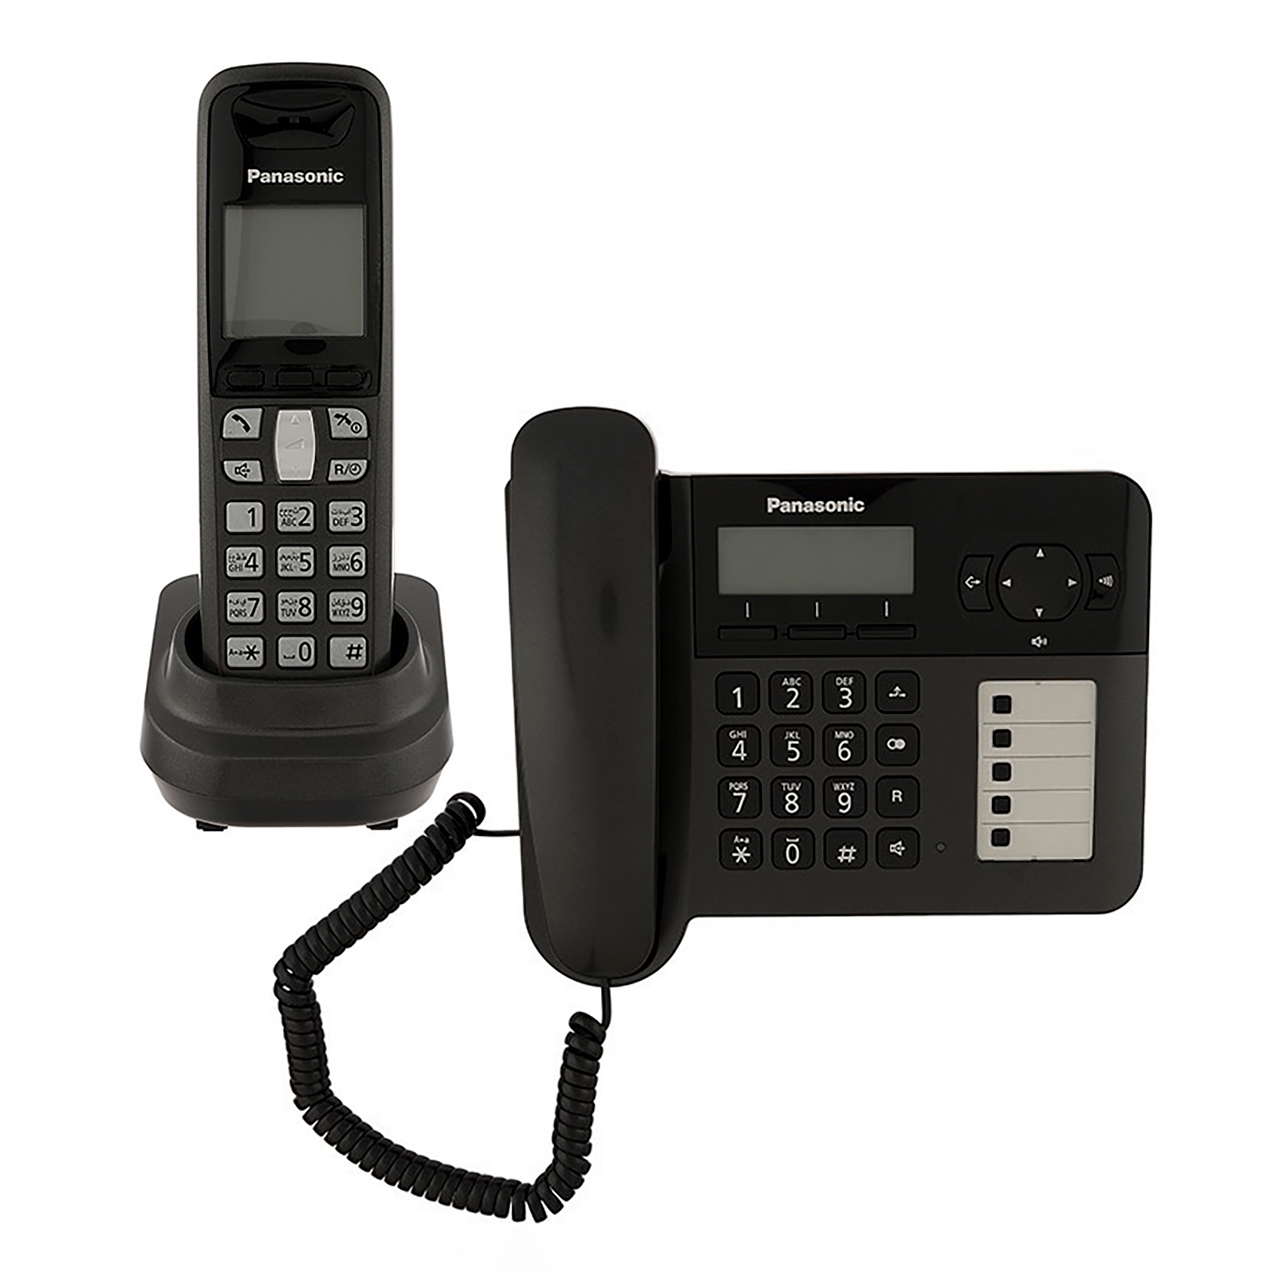 تلفن بیسیم پاناسونیک مدل Panasonic-KX-TG6458BX